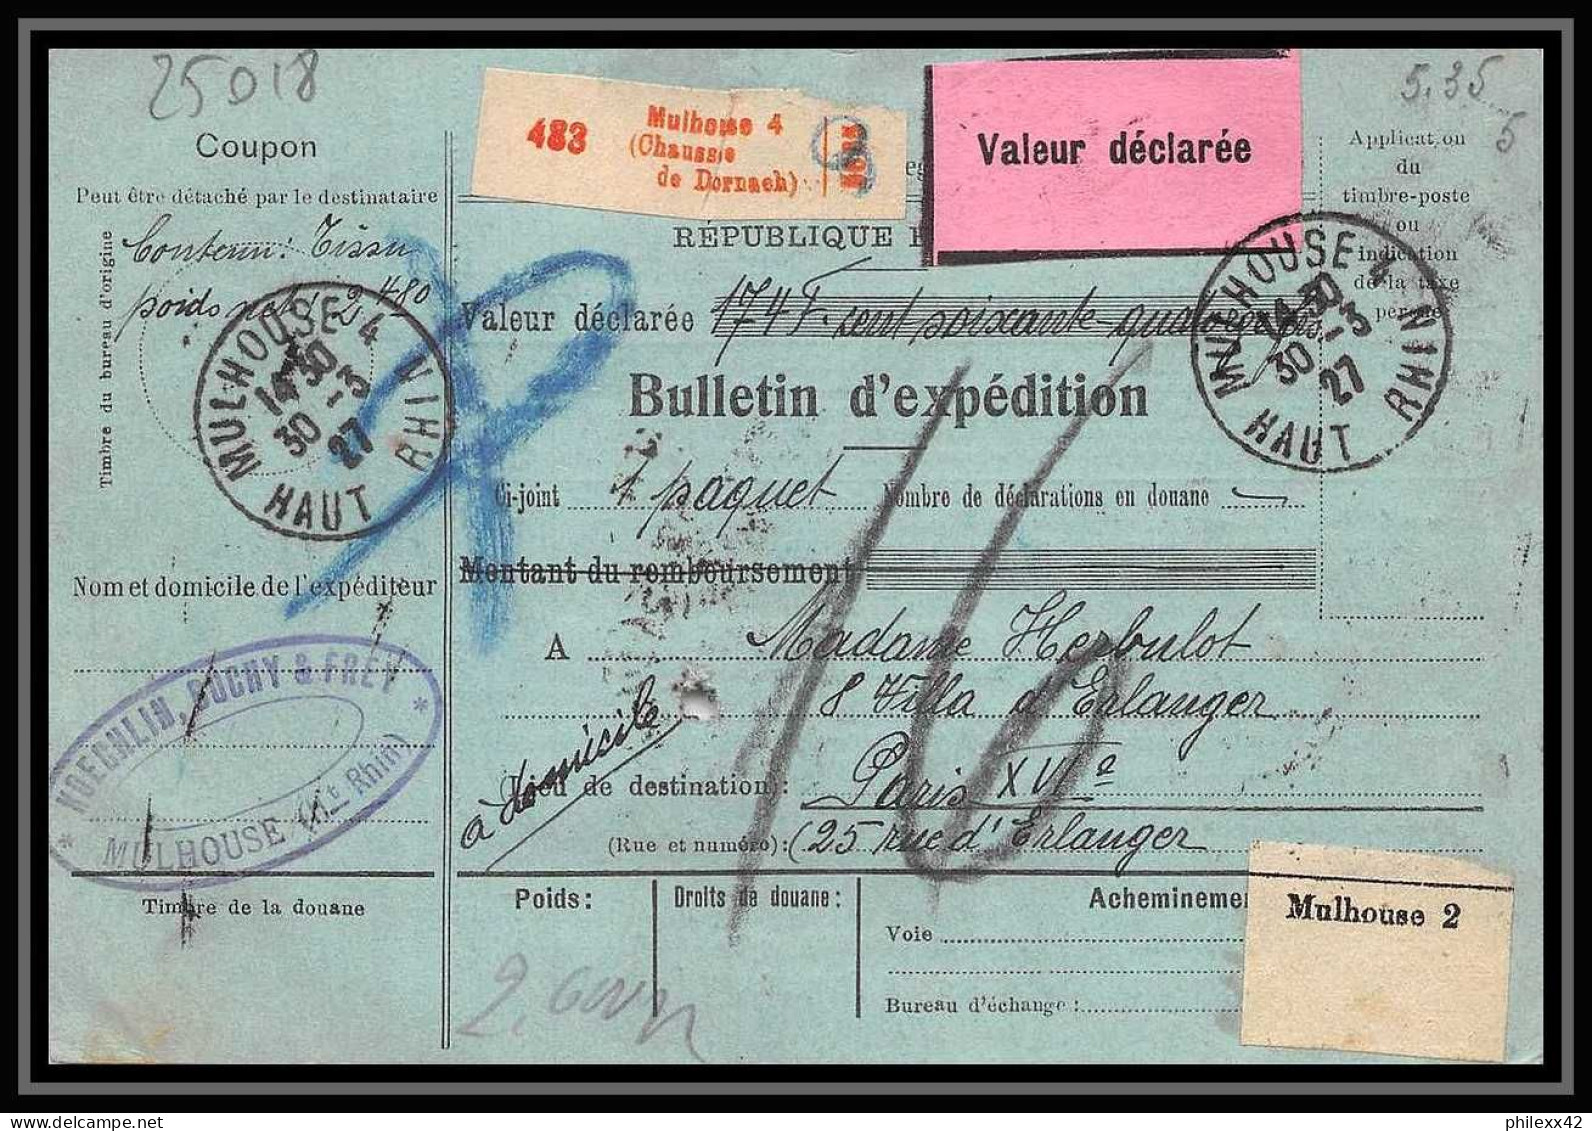 25018 Bulletin D'expédition France Colis Postaux Fiscal Haut Rhin 1927 Guebwiller Semeuse Merson 123 Valeur Déclarée - Brieven & Documenten